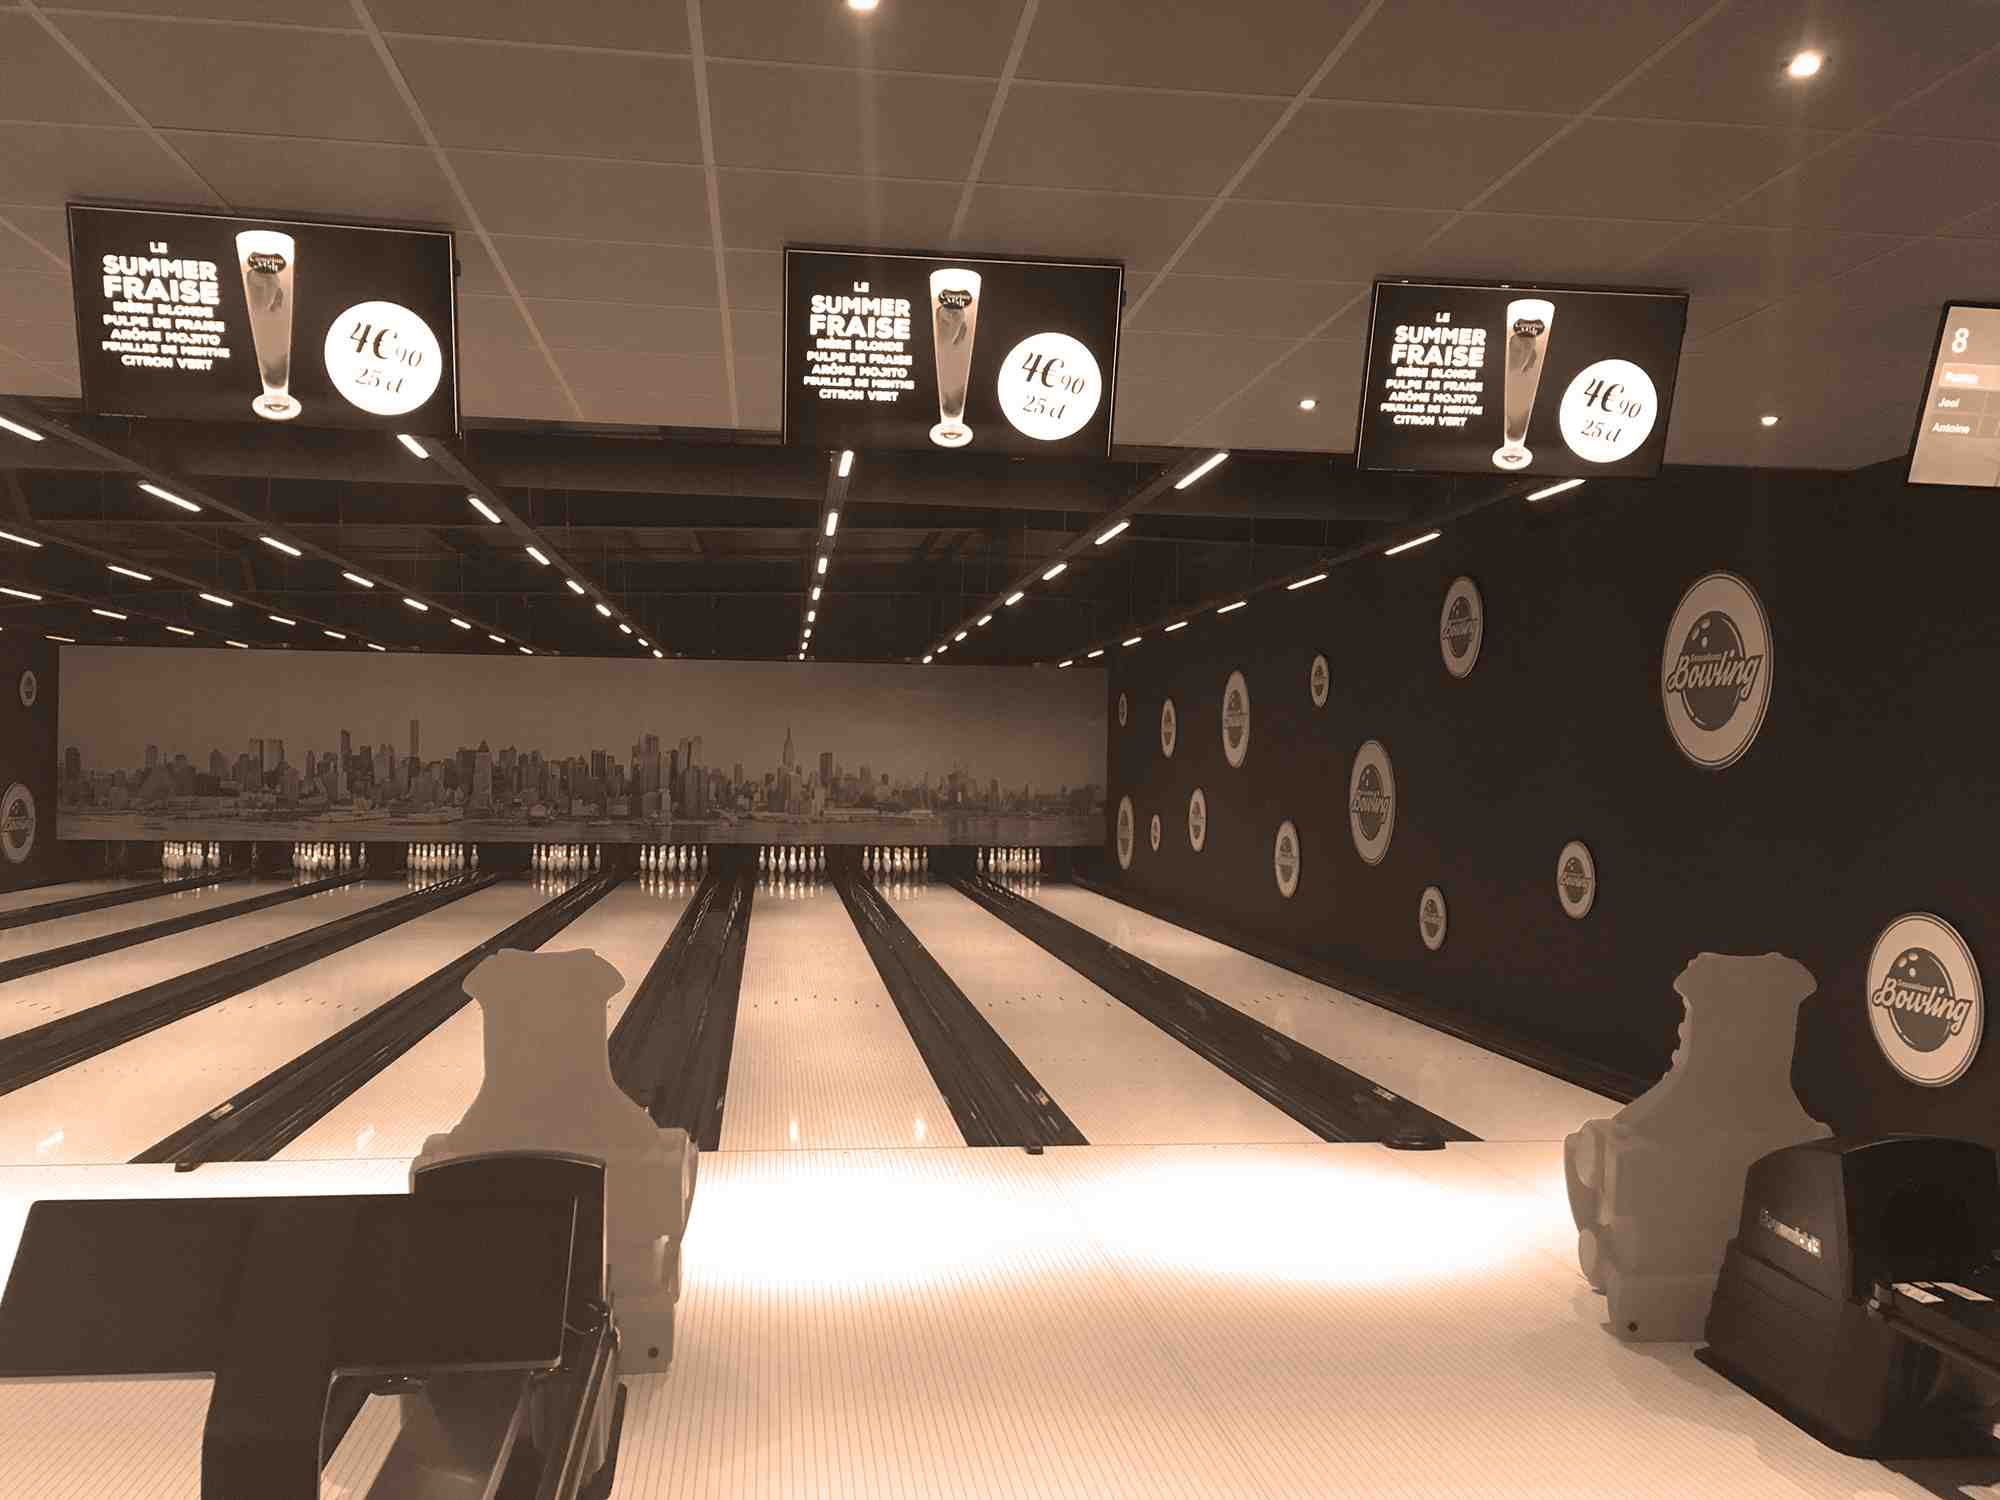 Comment mieux jouer au bowling?